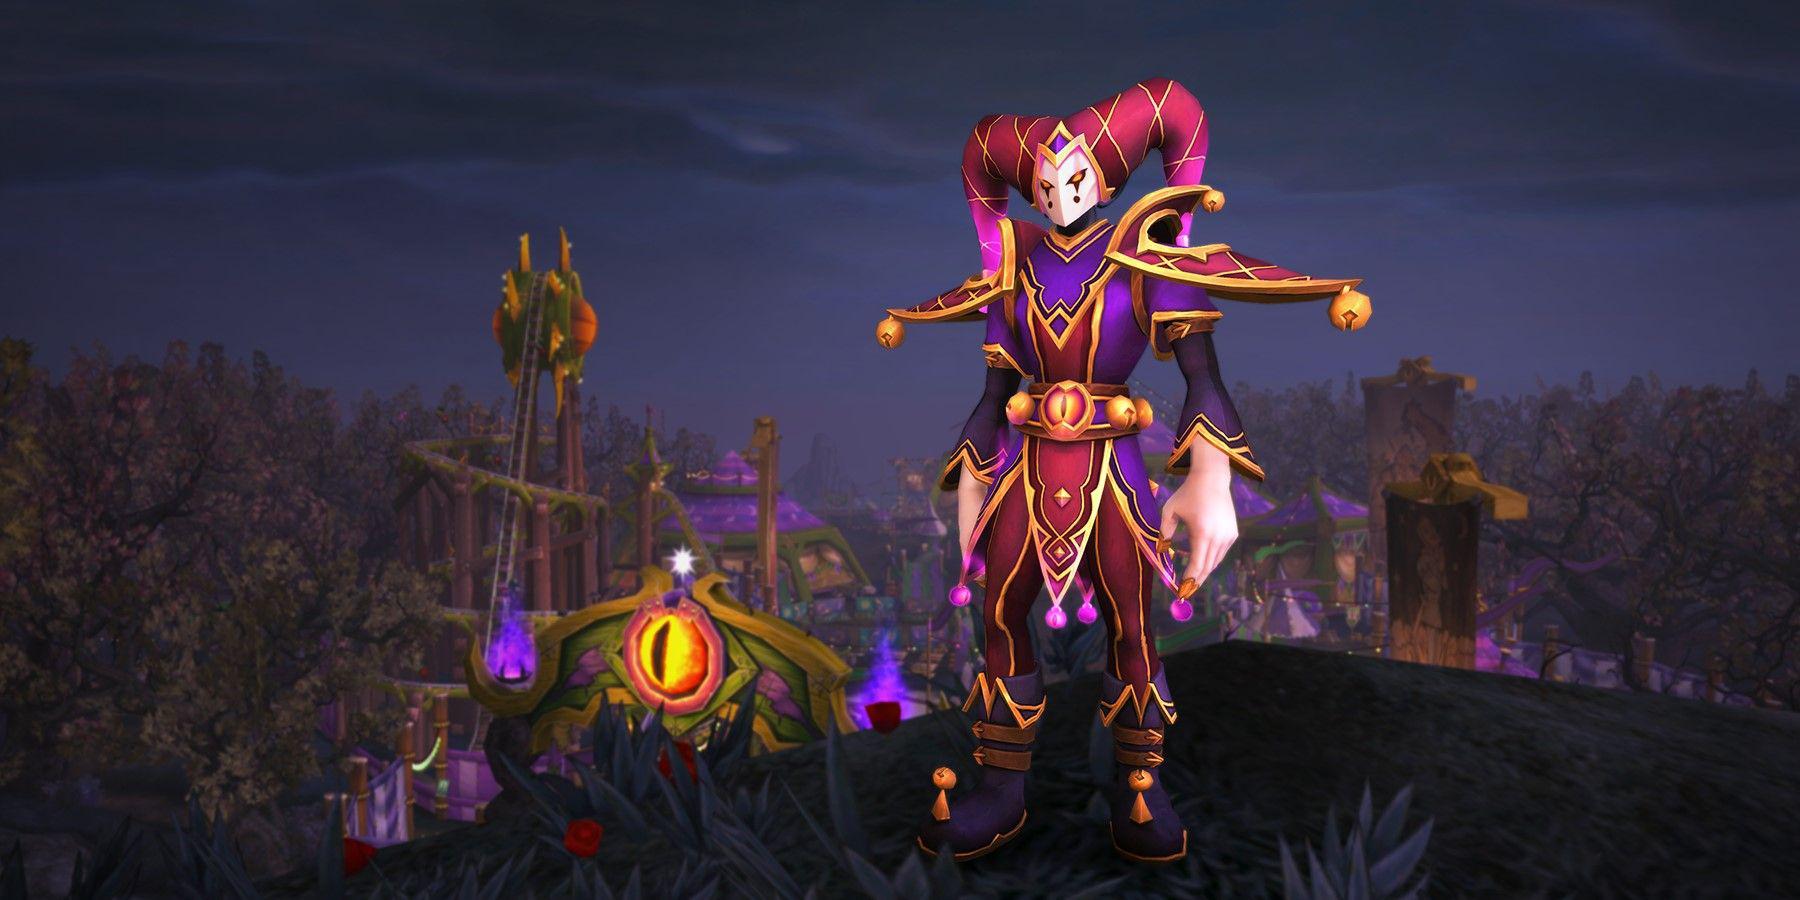 World Of Warcraft entra em novo mês com atualização do Trading Post